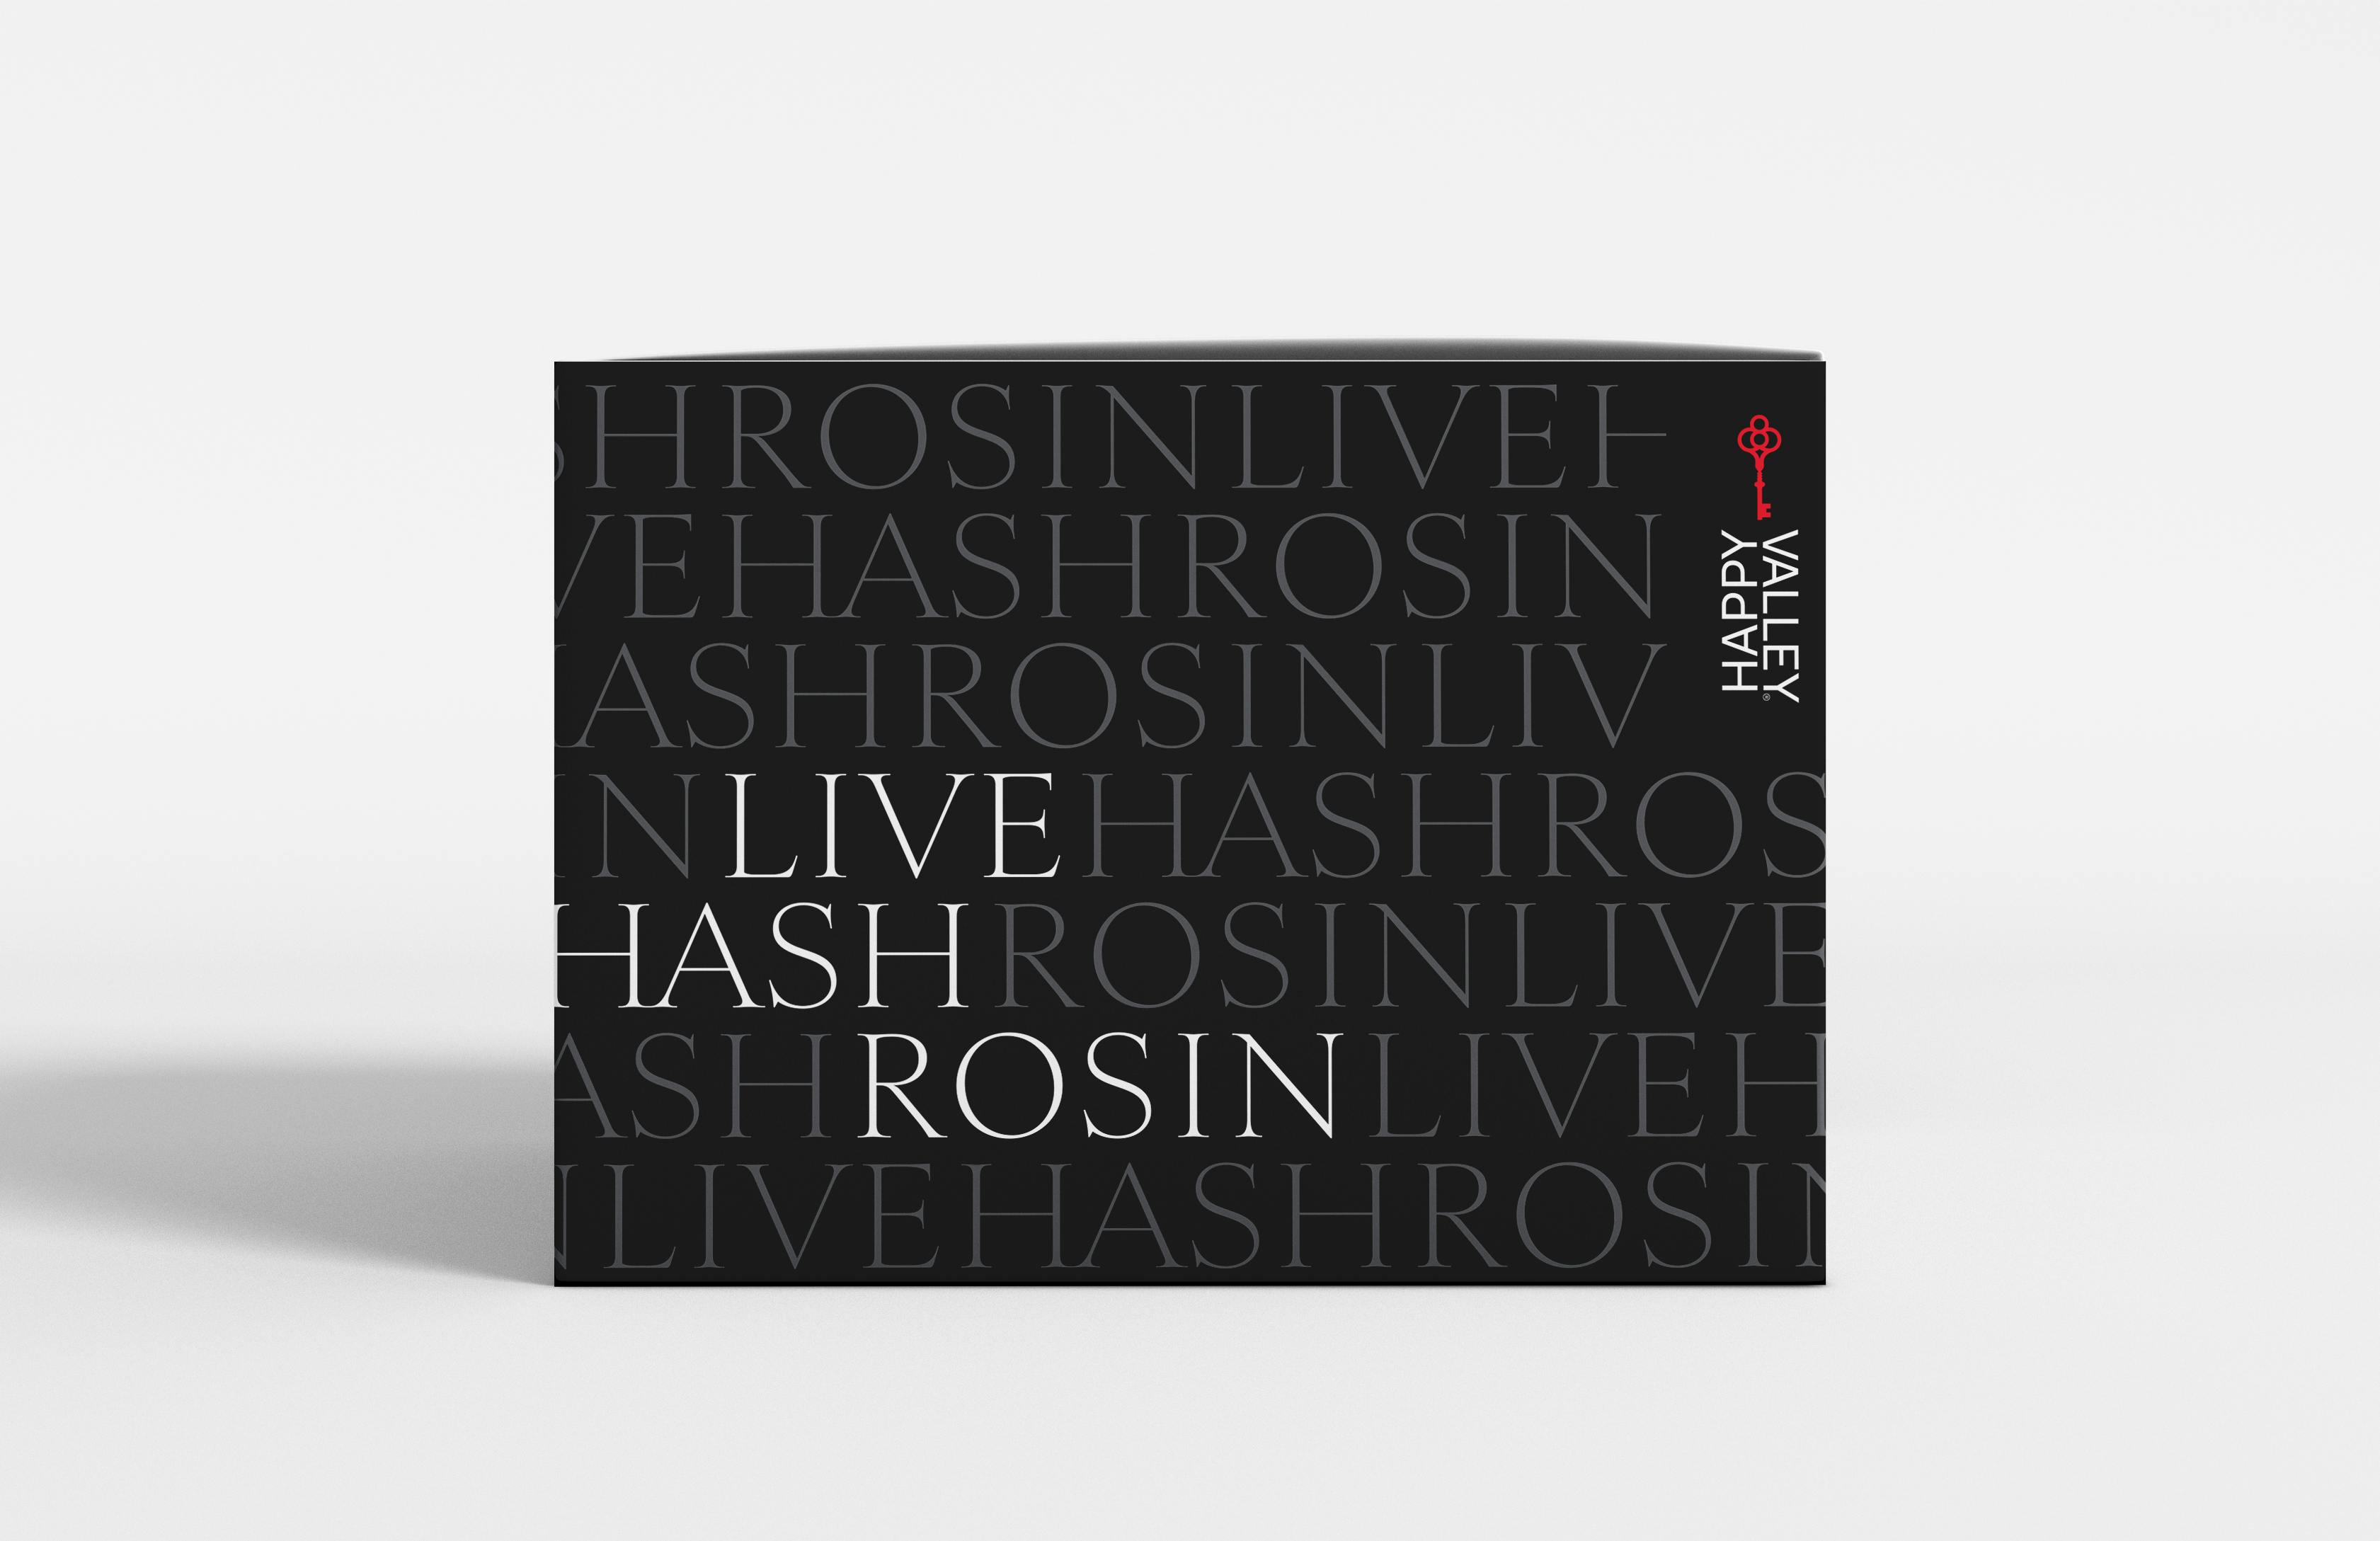 Live Hash Rosin Fresh Press 1g - CrescendO Temple - Tier 2